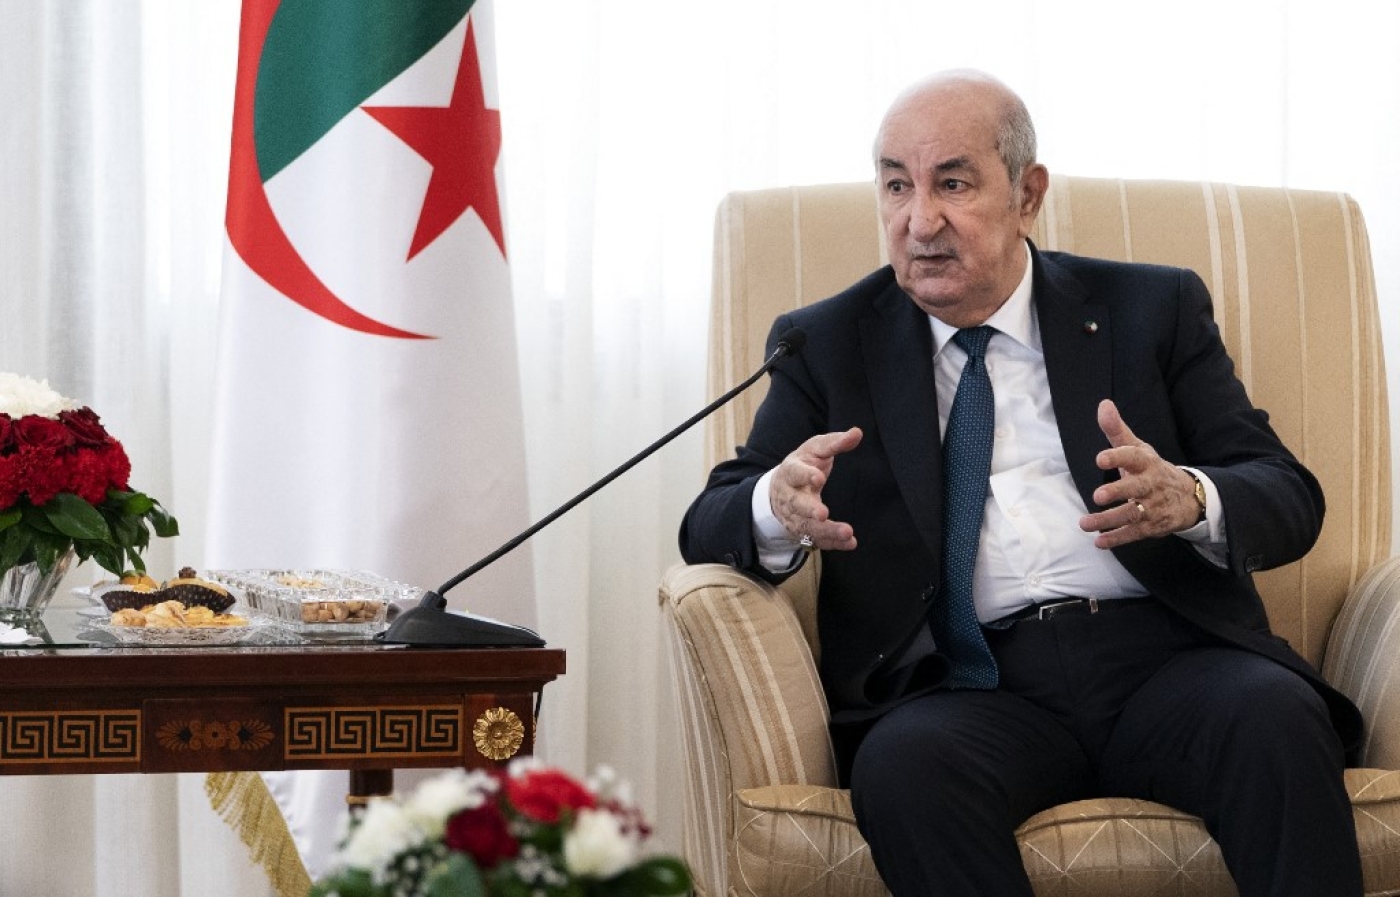  Le président algérien Abdelmadjid Tebboune a rencontré plusieurs chefs de partis cette semaine (AFP/Jacquelyn Martin) 